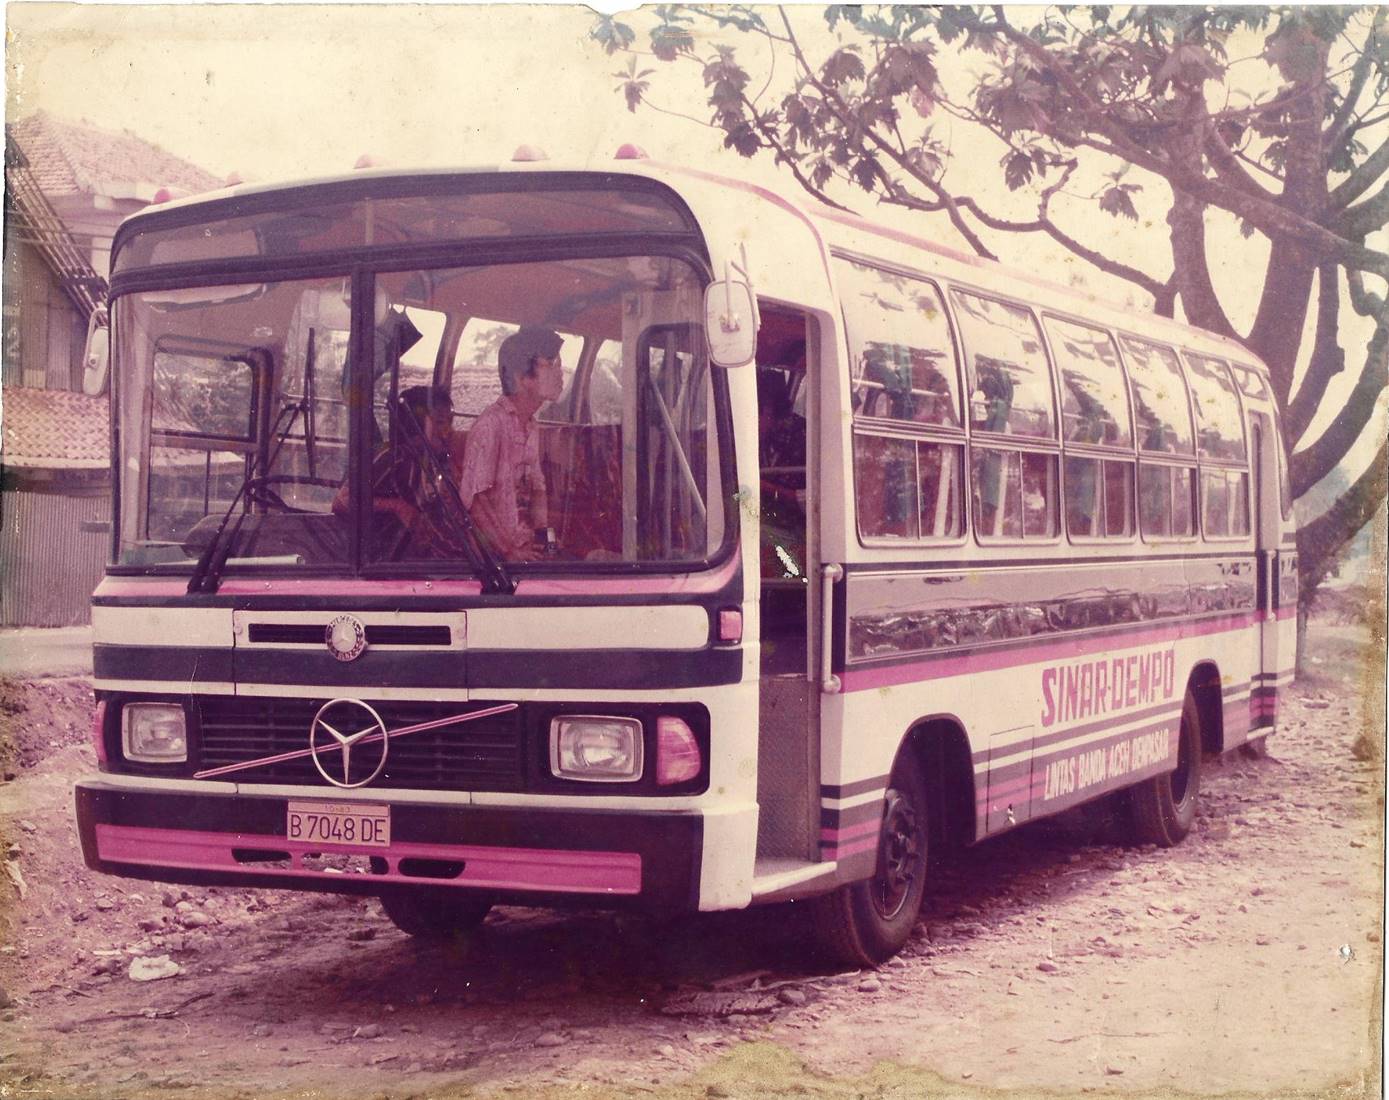 Sinar Dempo Bus Legendaris Yang Jarang Terekspos,Sang Penjelajah Dari Gunung Dempo